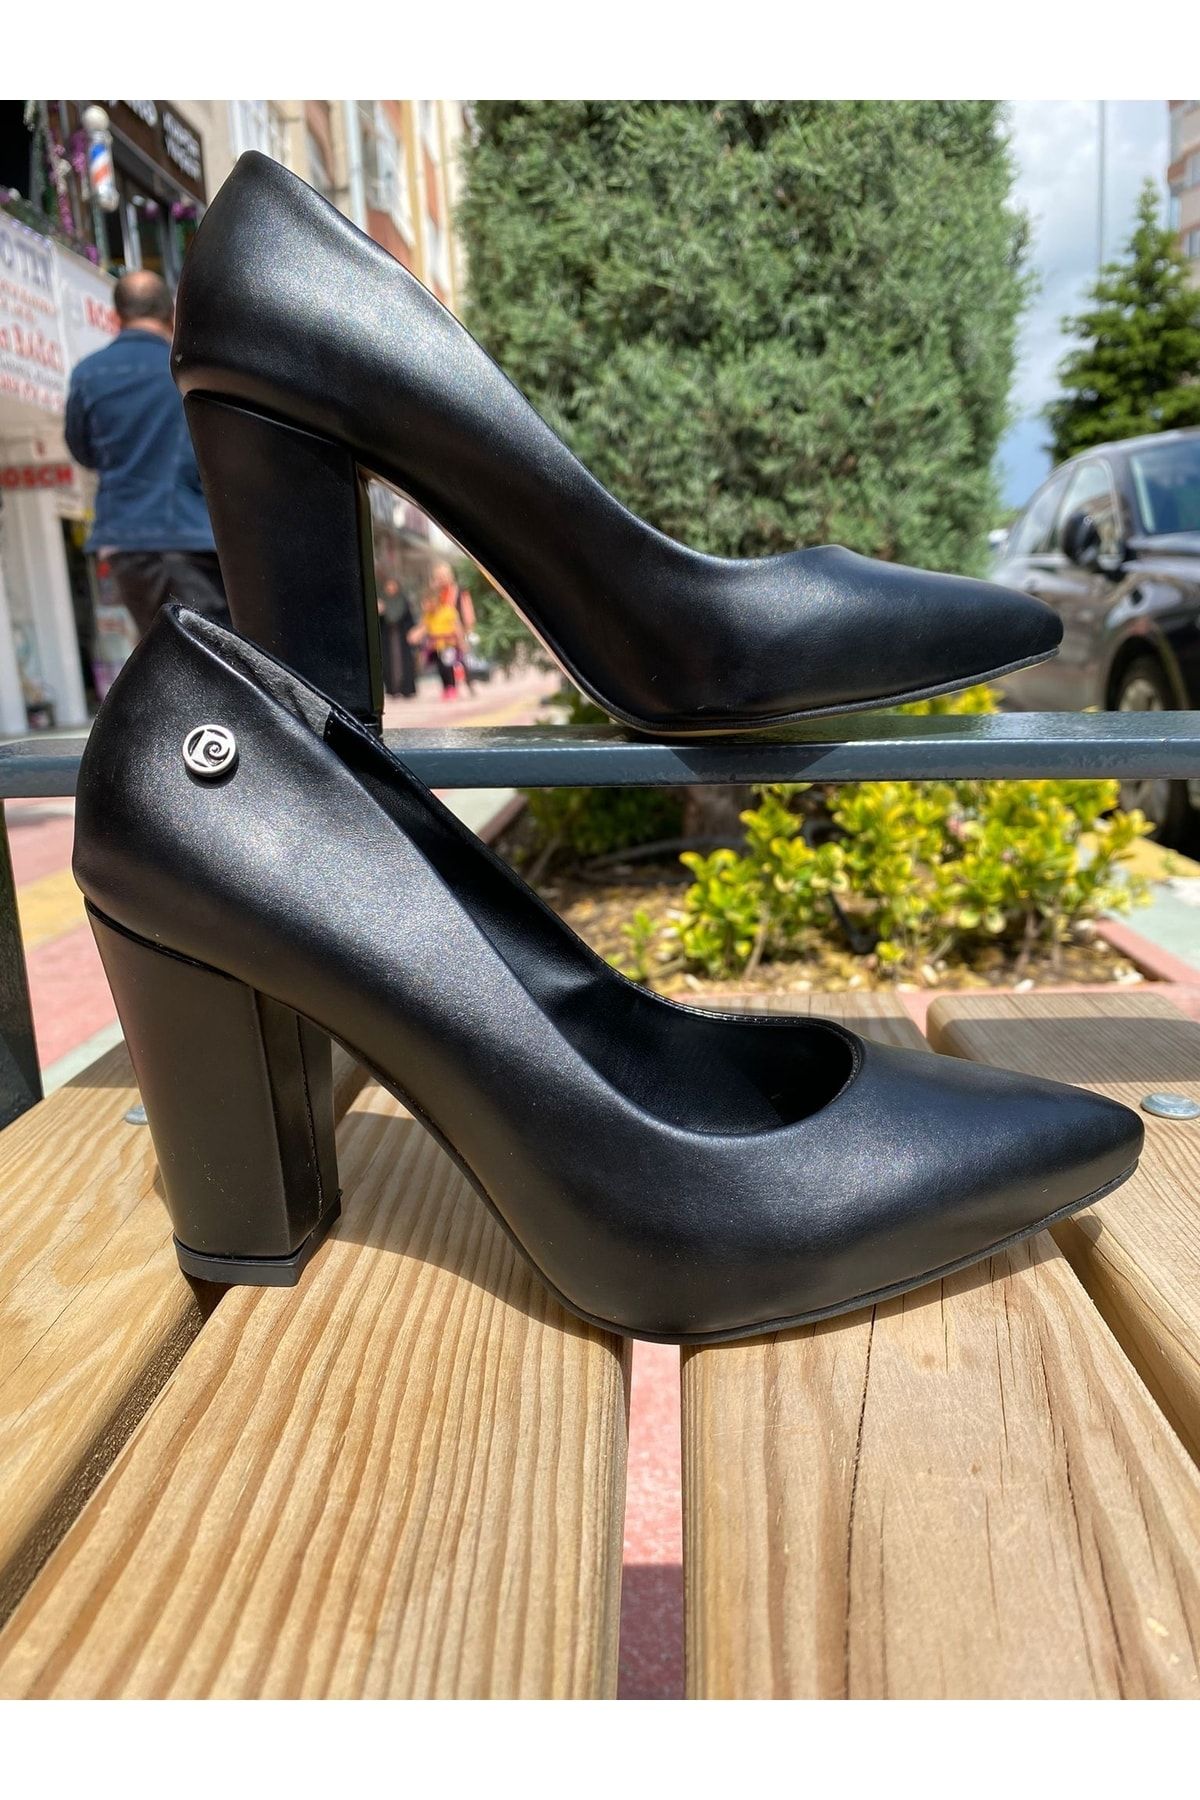 Pierre Cardin ® | Pc-52273 Cilt Deri Comfort Taban Kadın 8cm Kalın Topuklu Günlük Stiletto Ayakkabı